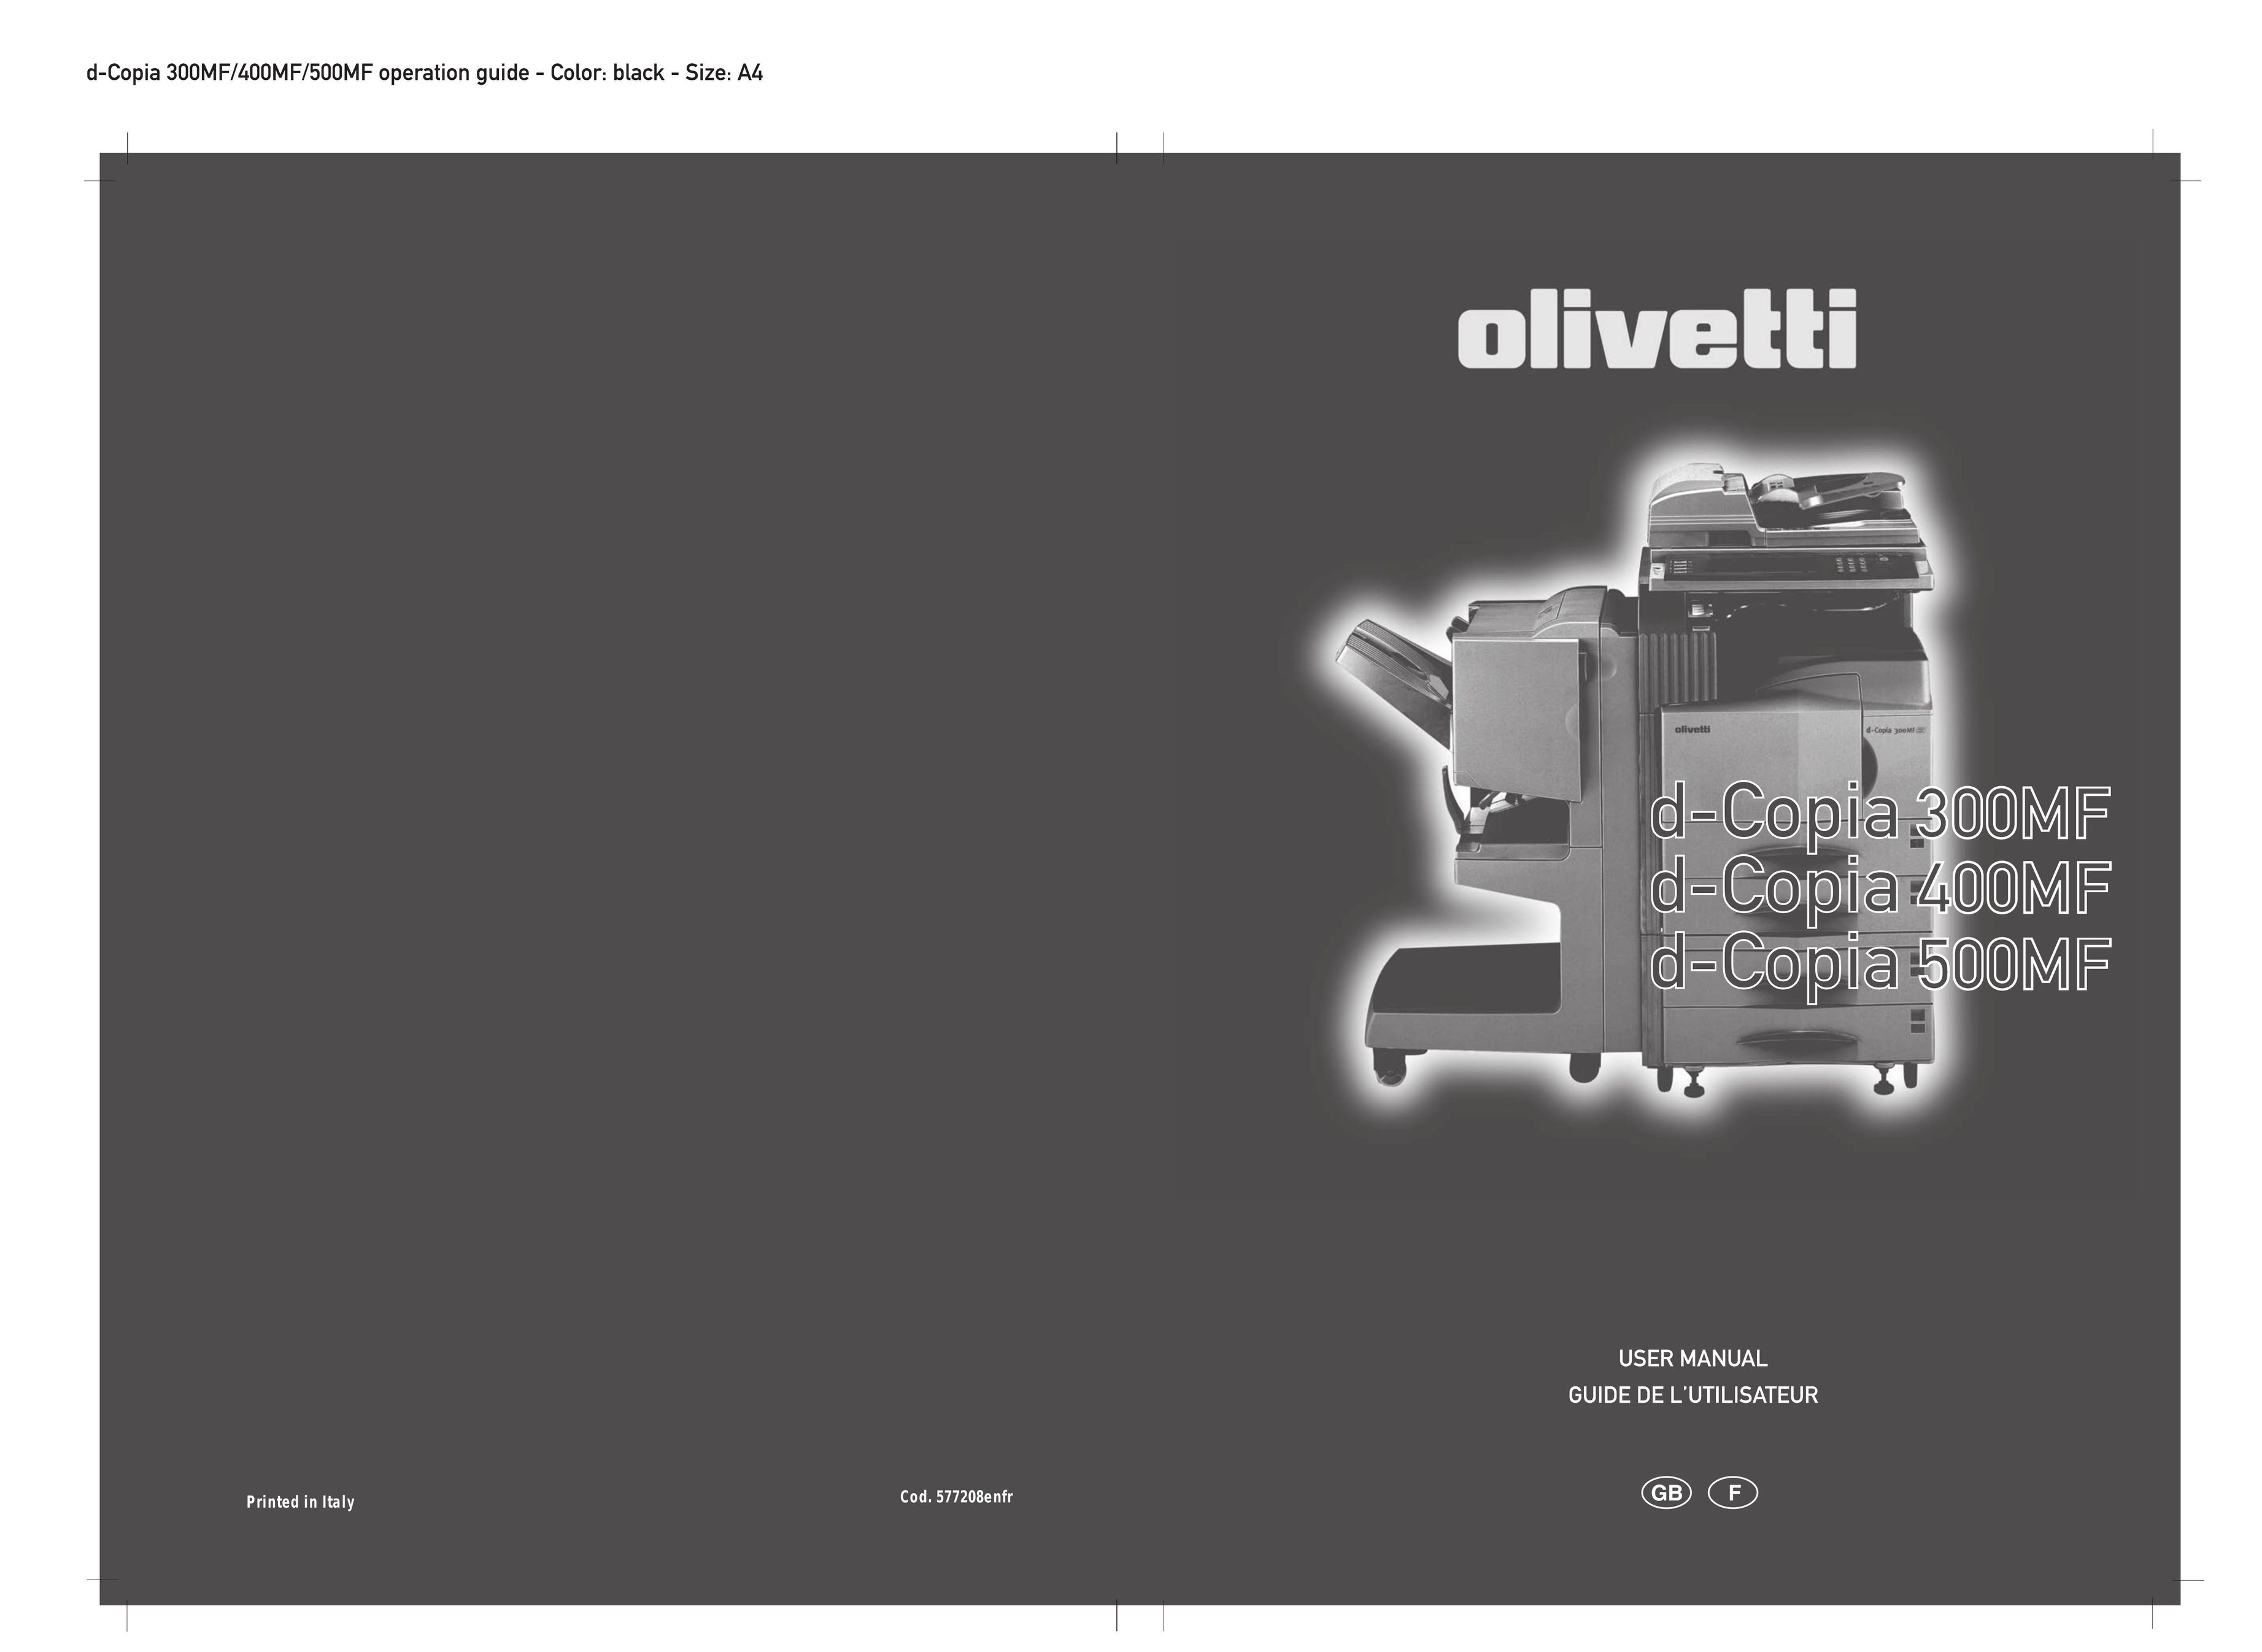 Olivetti D-COPIA 500MF All in One Printer User Manual